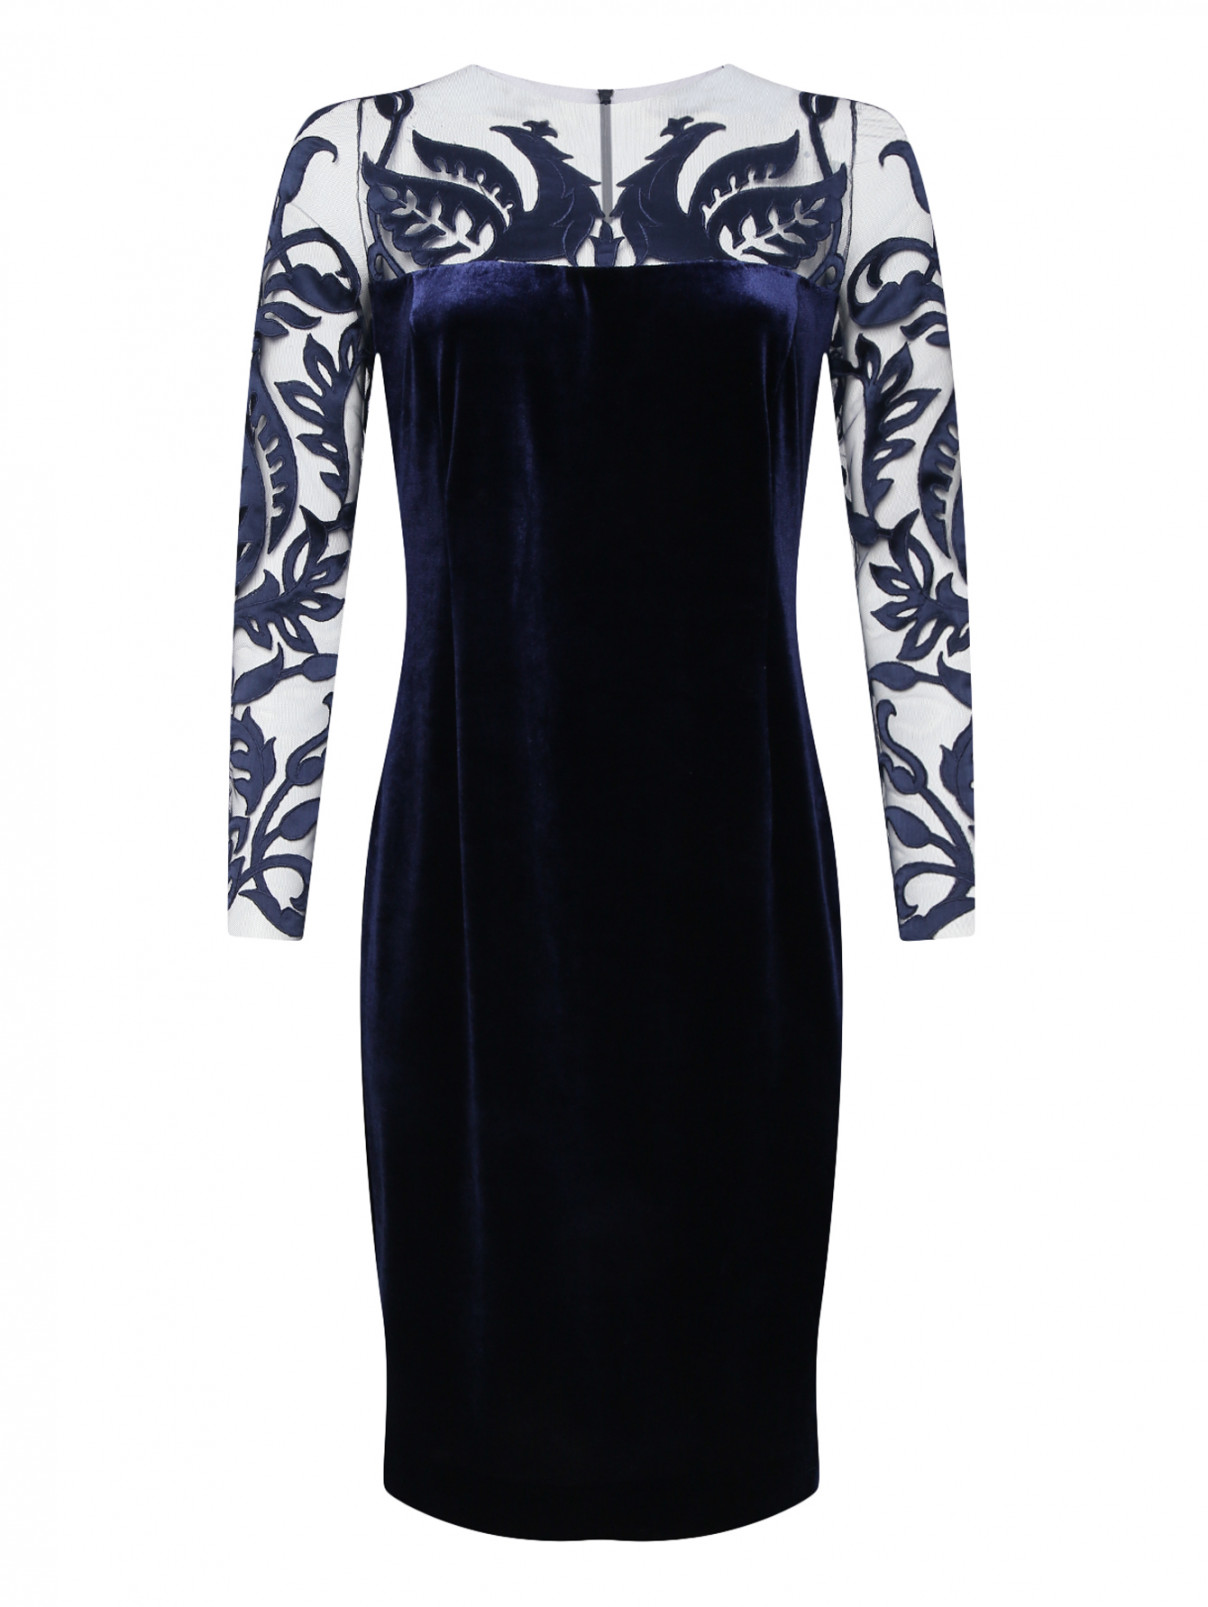 Бархатное платье с полупрозрачной вставкой Yanina  –  Общий вид  – Цвет:  Синий